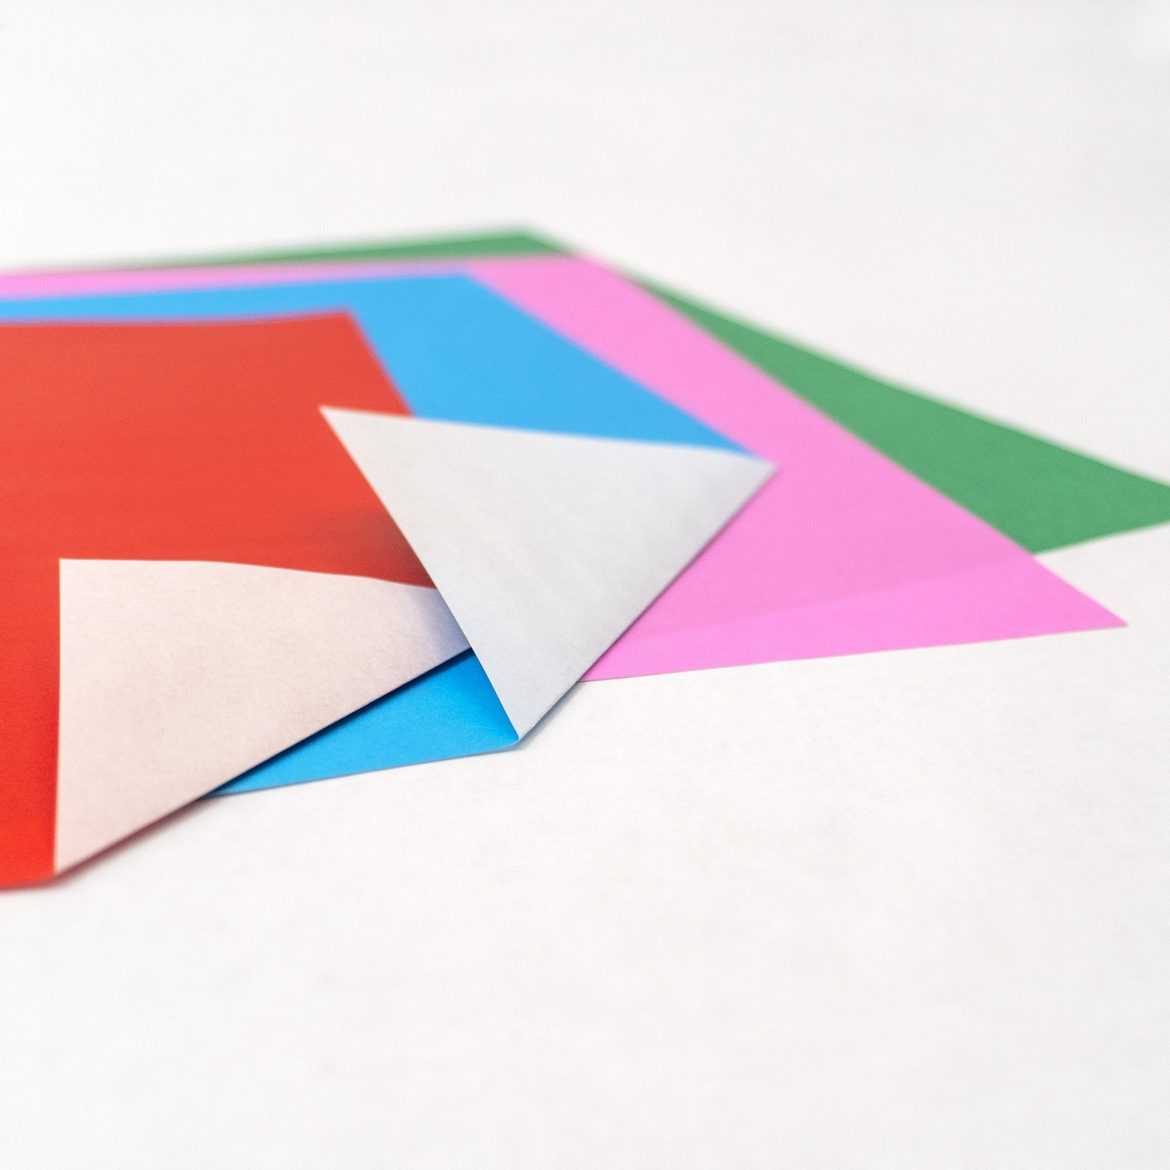  Taro’s Origami Studio Origami Paper Buying Guide